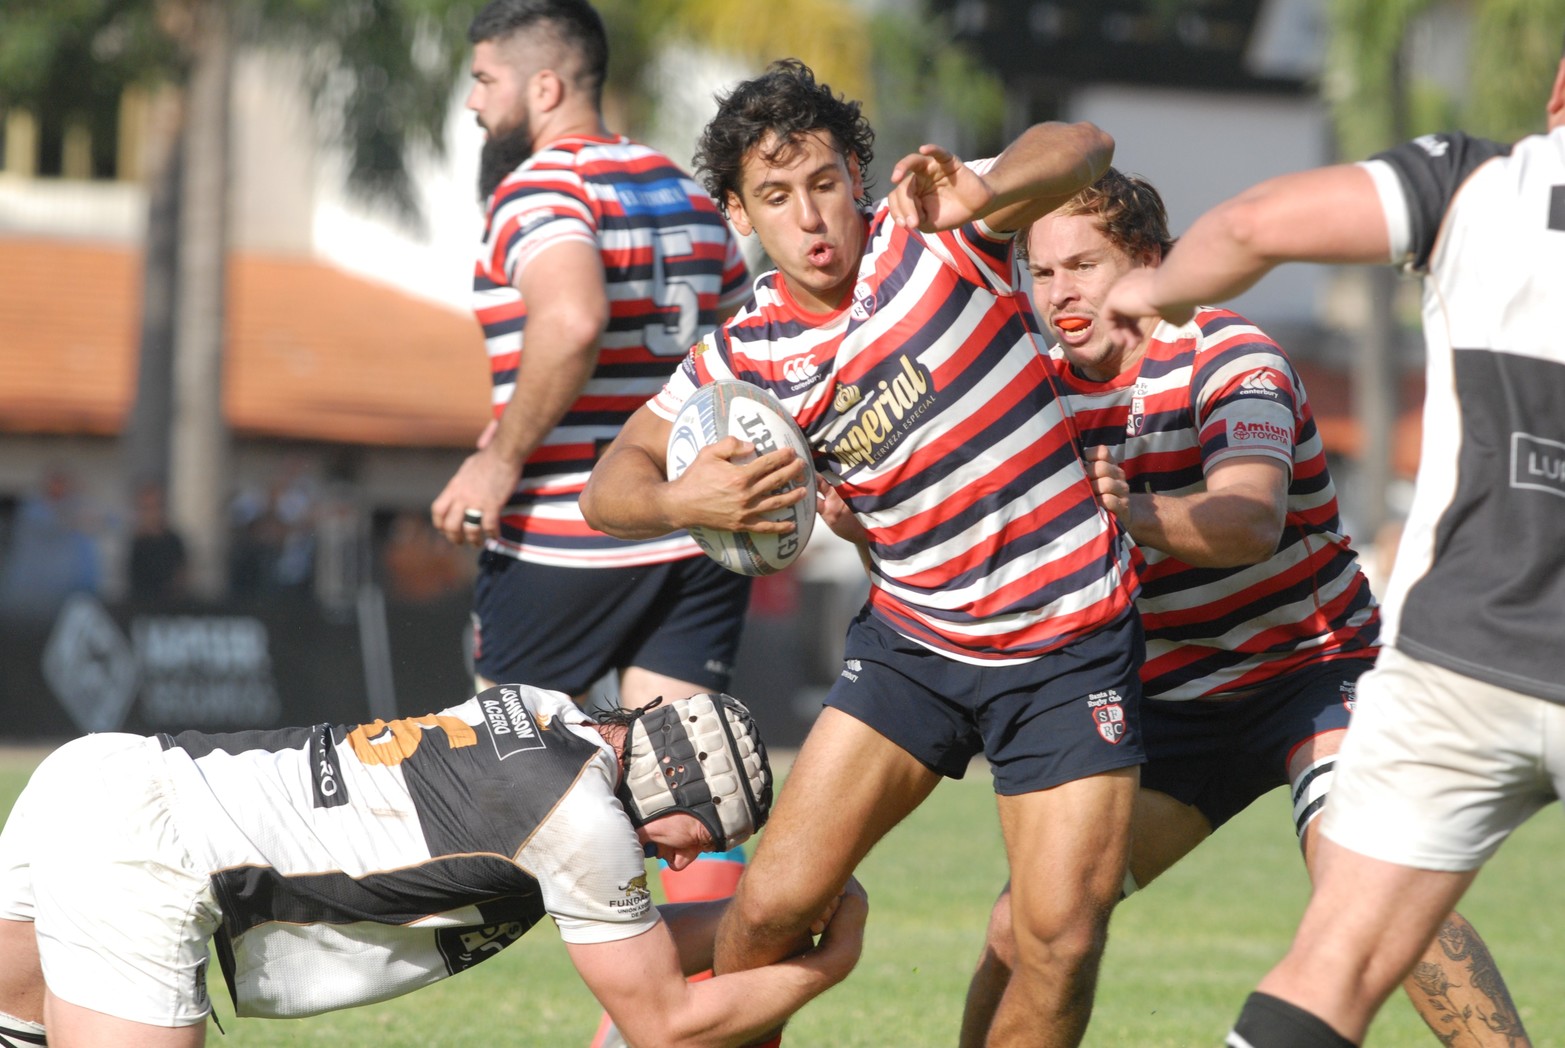 Santa Fe Rugby logró un importante triunfo en Paraná. Dominó y venció 36 a 21 al Club Estudiantes.